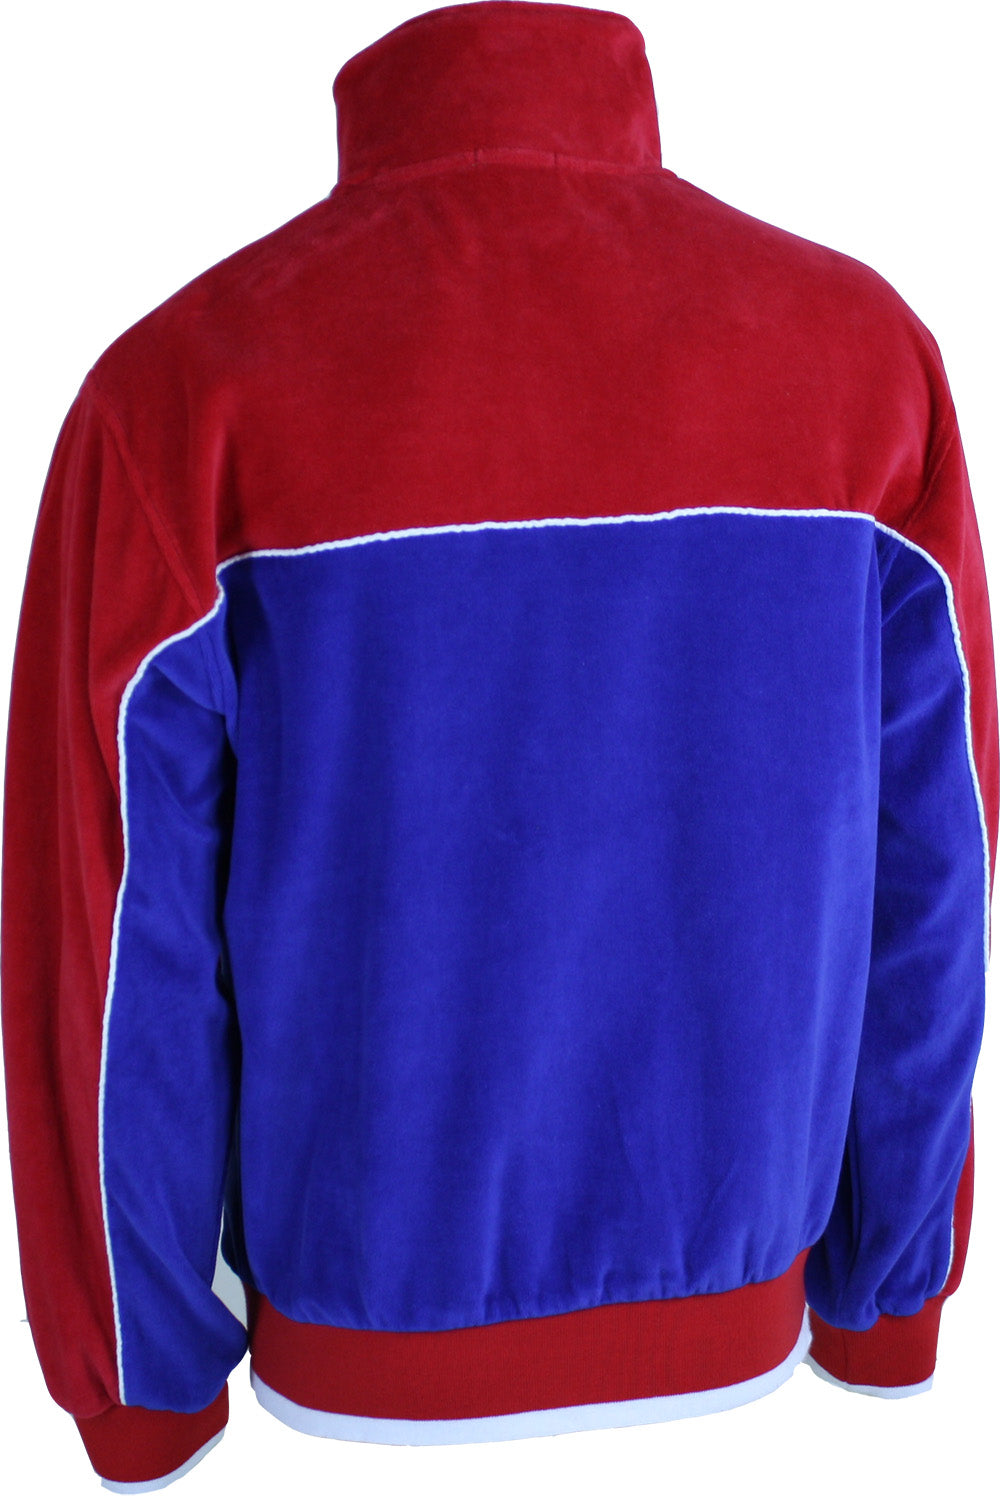 Red, White and Blue Velour Jacket | Track Jacket | Sweatsedo